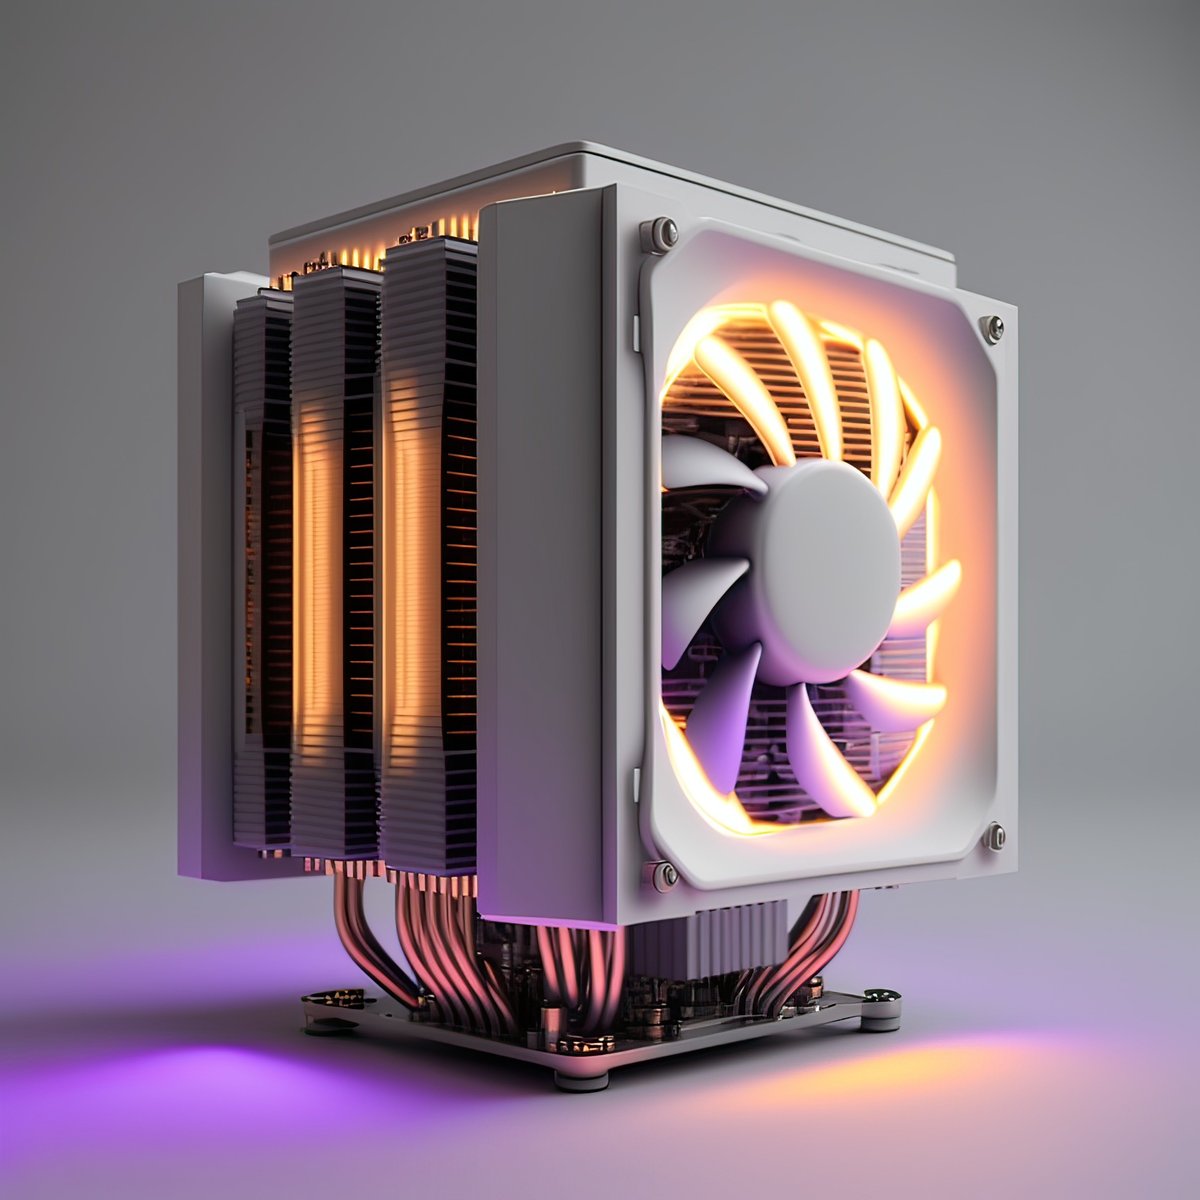 Fan cooling electronics